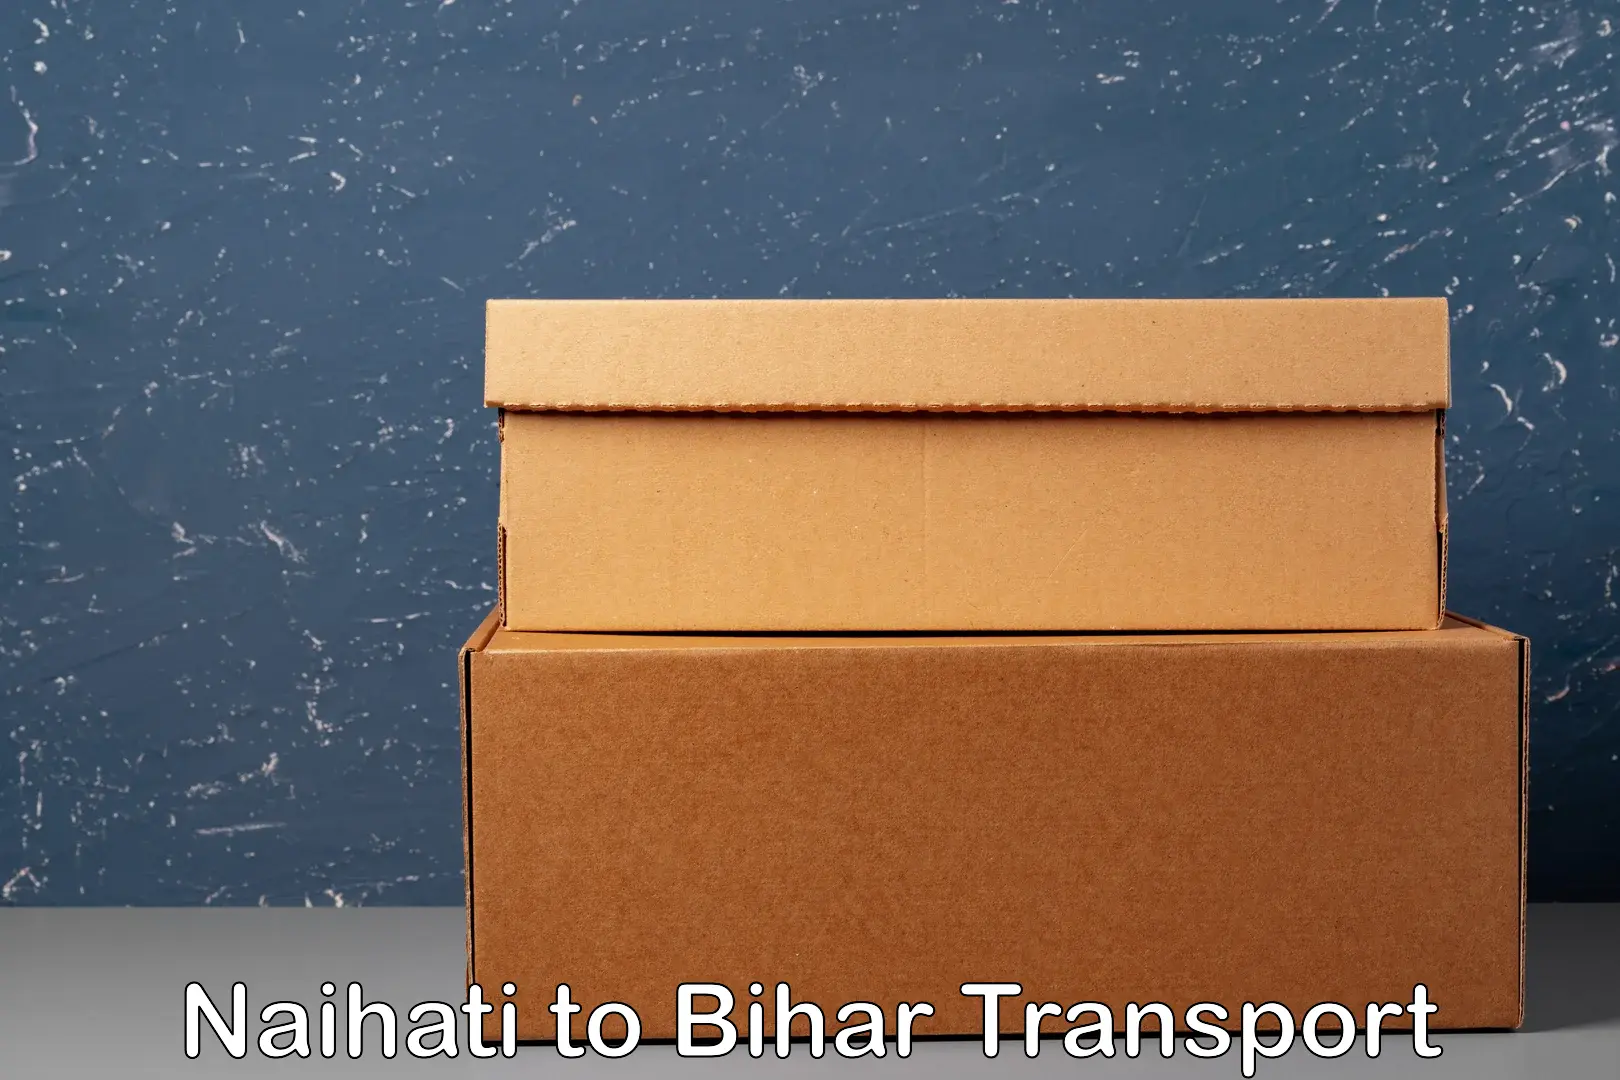 Transportation services Naihati to Dhaka